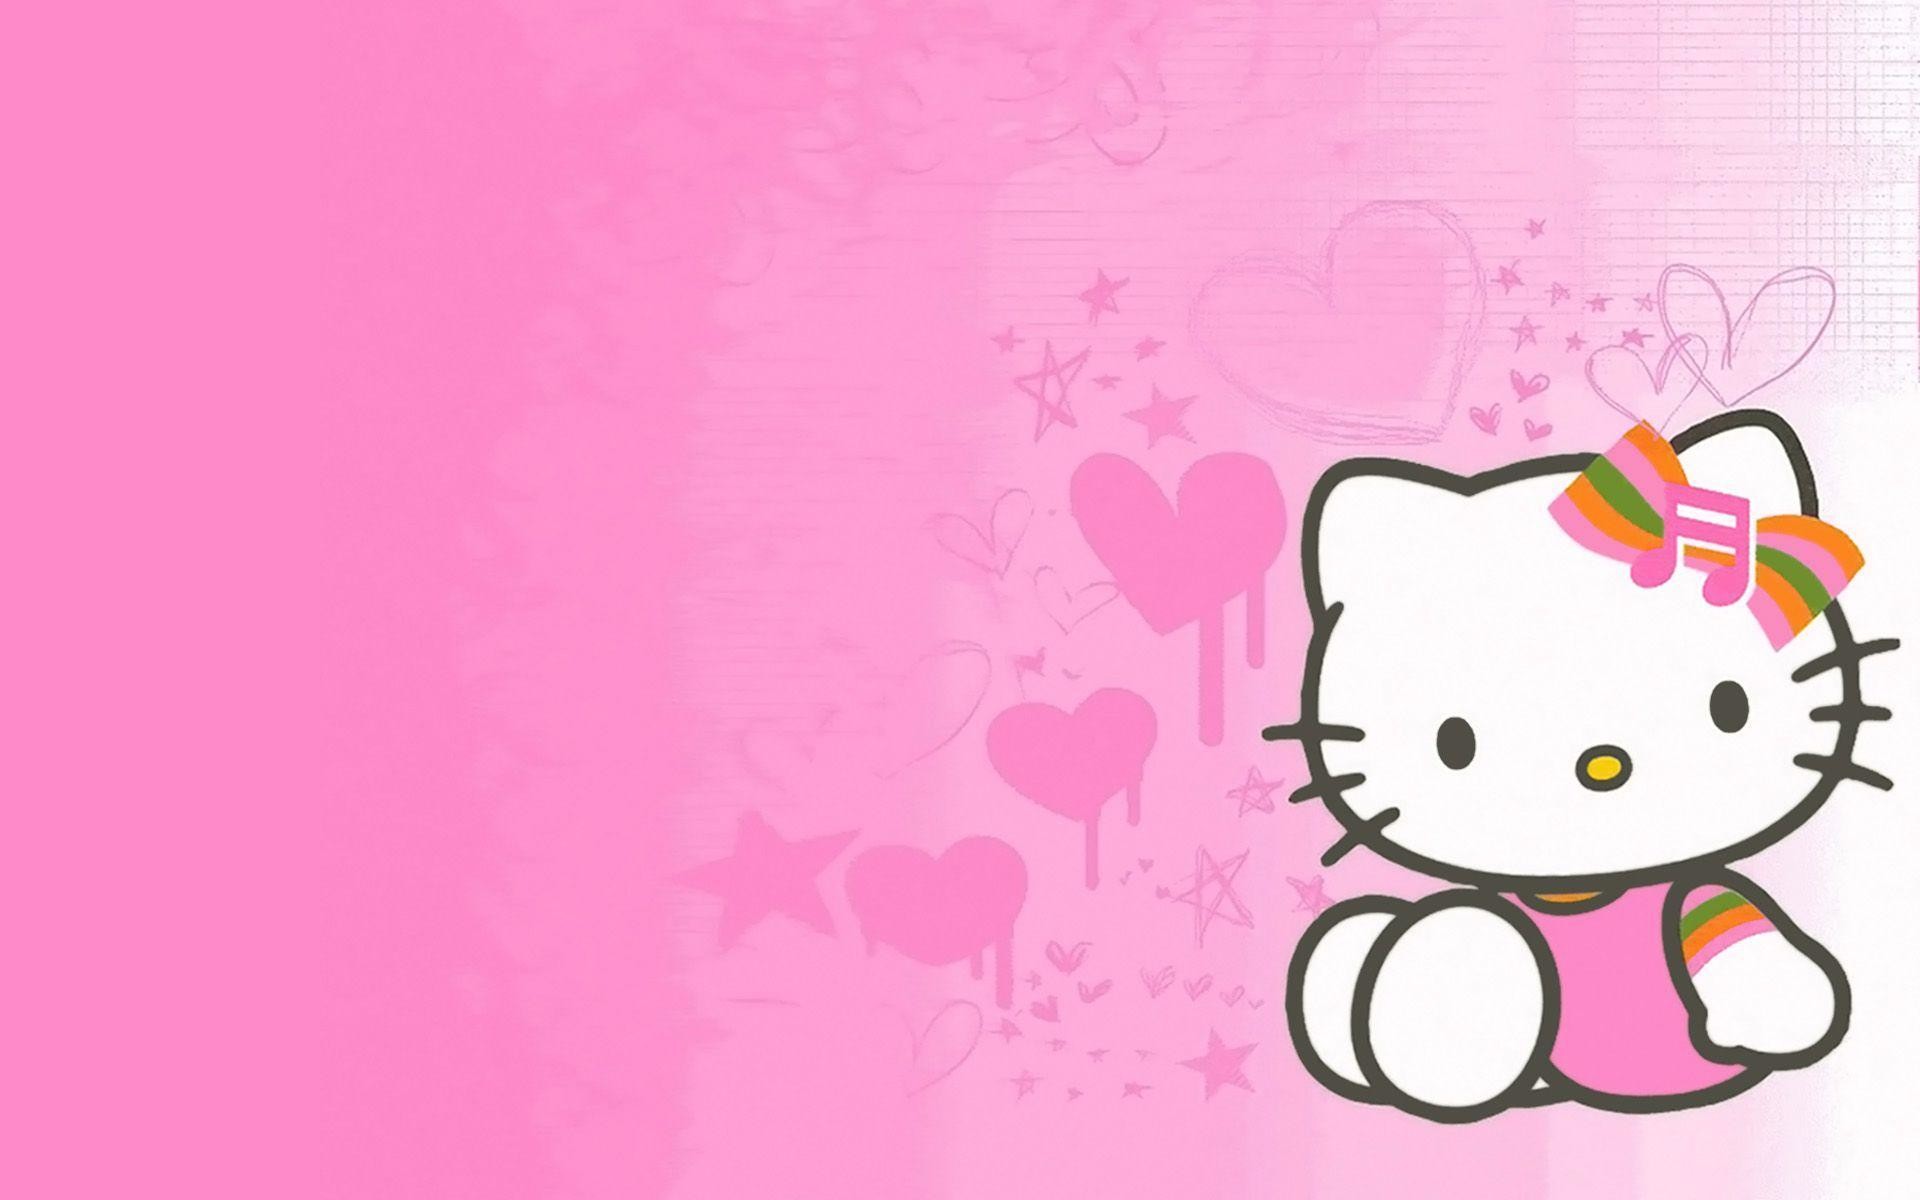 Hello Kitty luôn là một biểu tượng đáng yêu và gần gũi trong lòng trẻ em lẫn người lớn. Hãy xem hình nền màu hồng này để trở về tuổi thơ và cảm nhận vẻ đẹp vô giá của nhân vật nổi tiếng này.